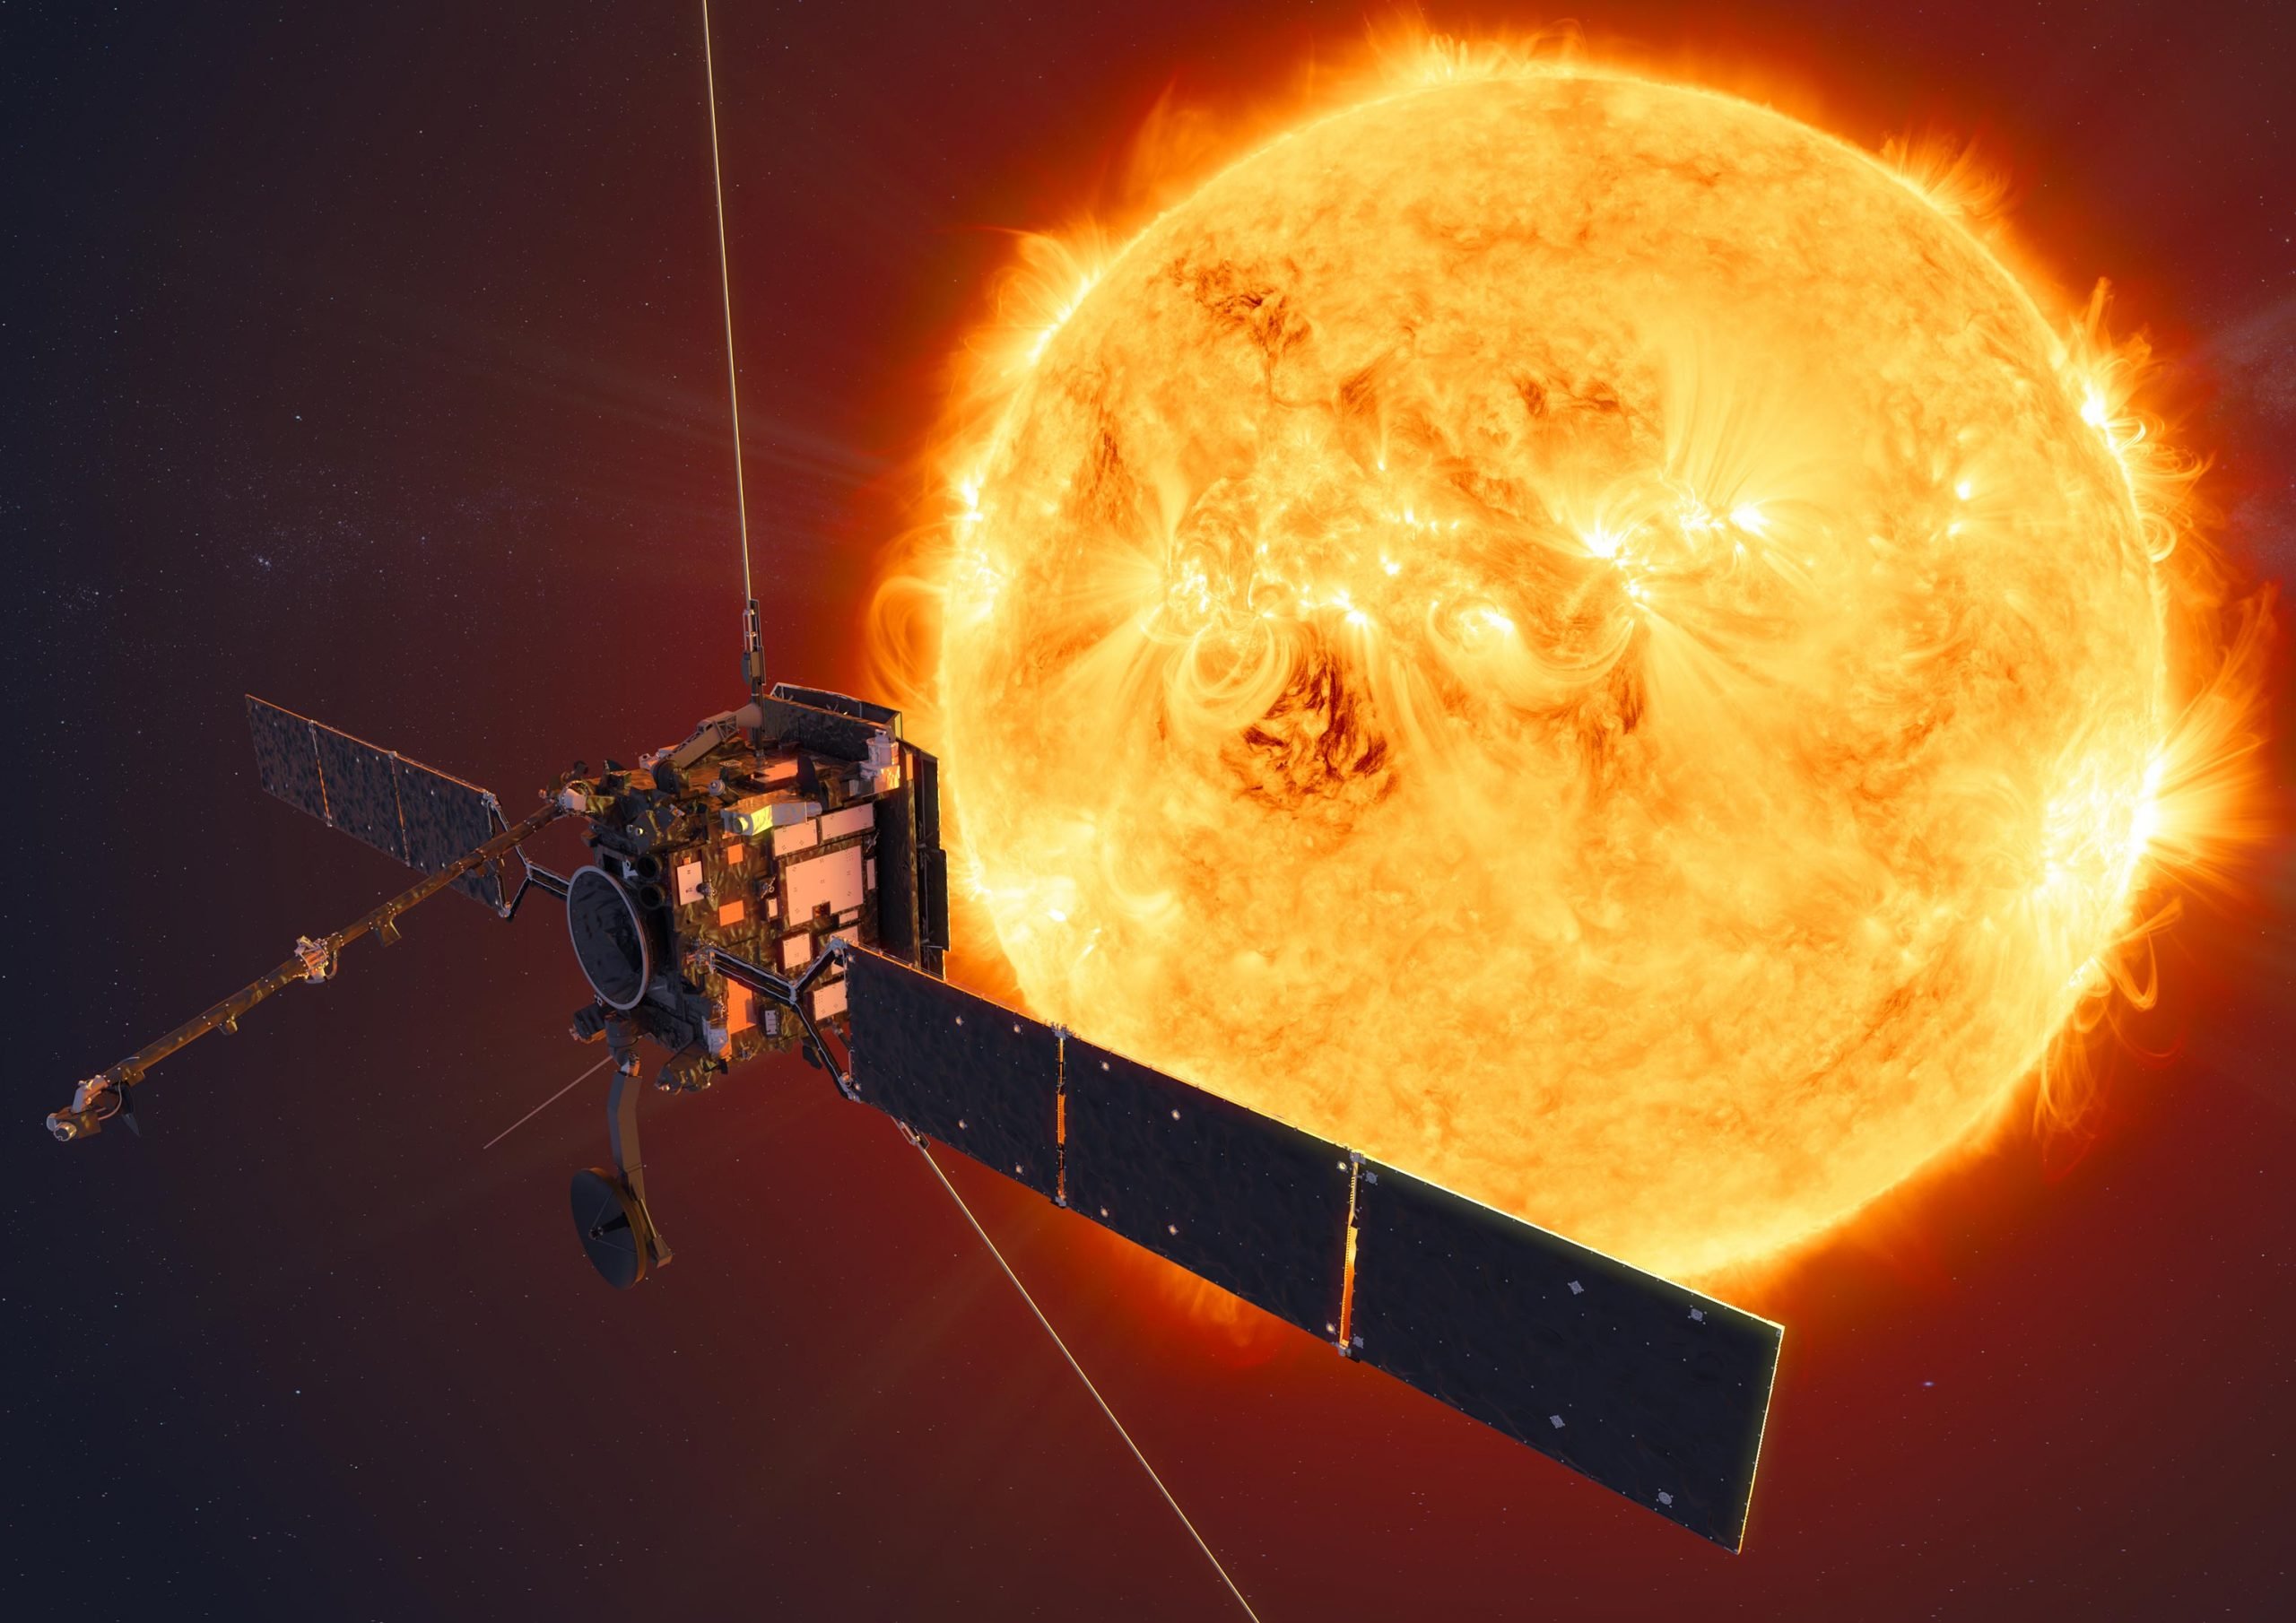 El módulo solar en órbita captura la delicada corona del Sol con sorprendente detalle [Video]